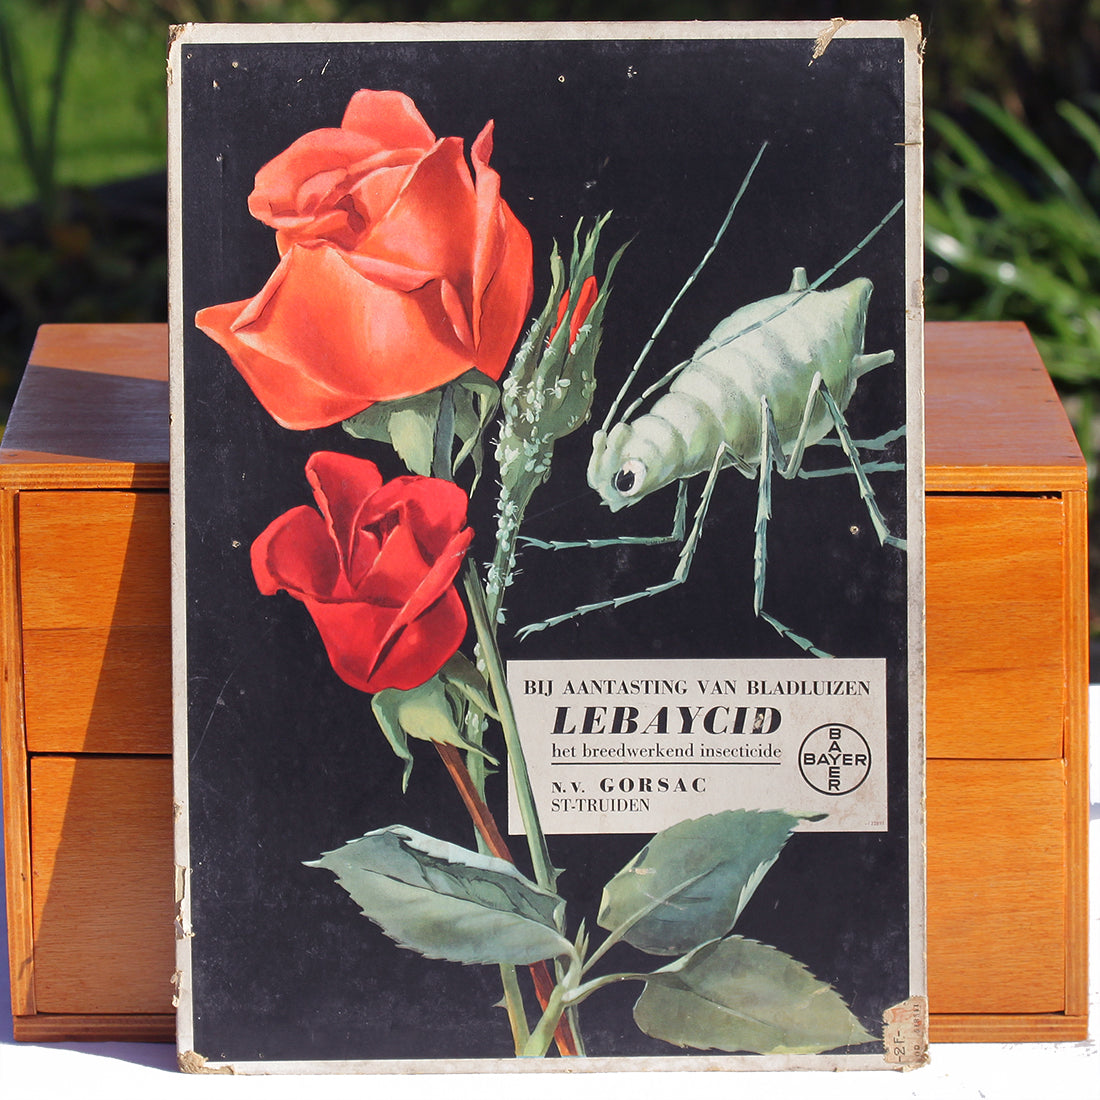 Ancien carton publicitaire de droguerie belge pour l'insecticide Lebaycid de Bayer